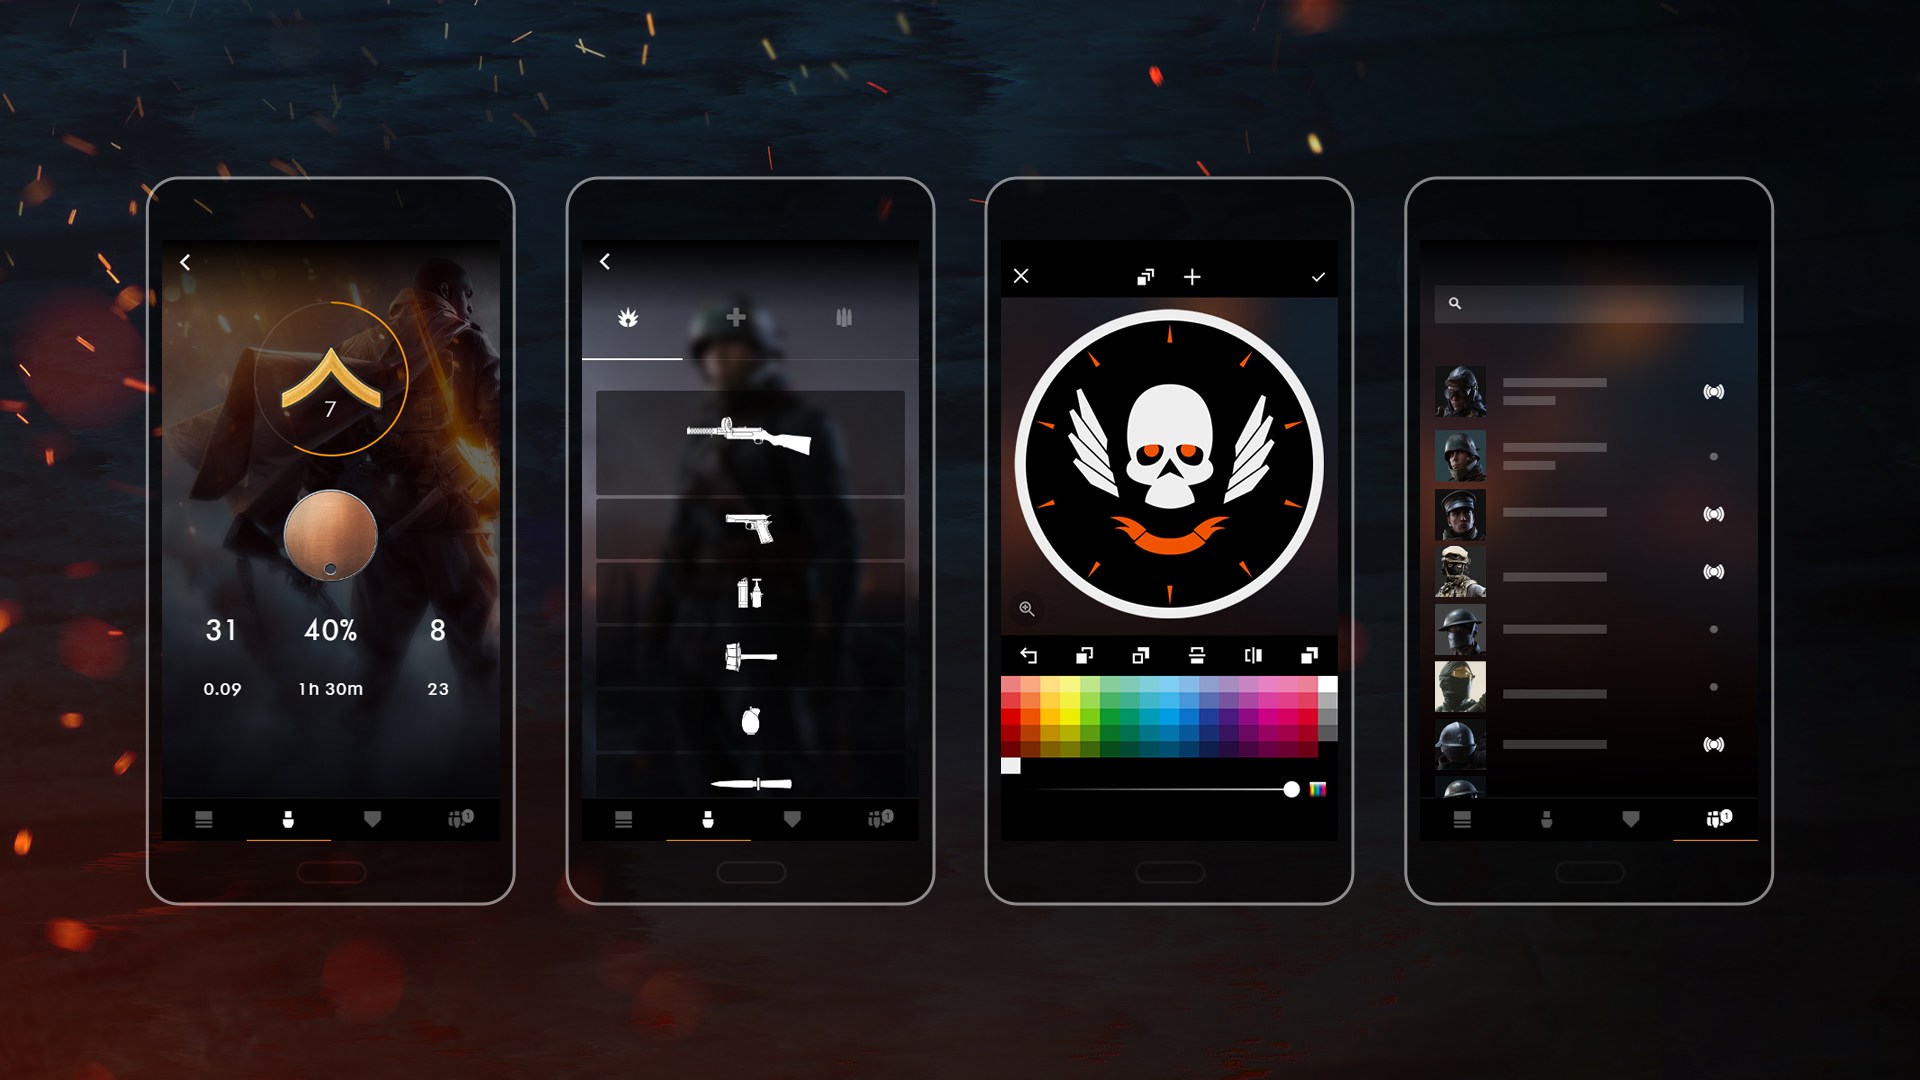 Battlefield 1 Companion App - Battlefield App - HD Wallpaper 